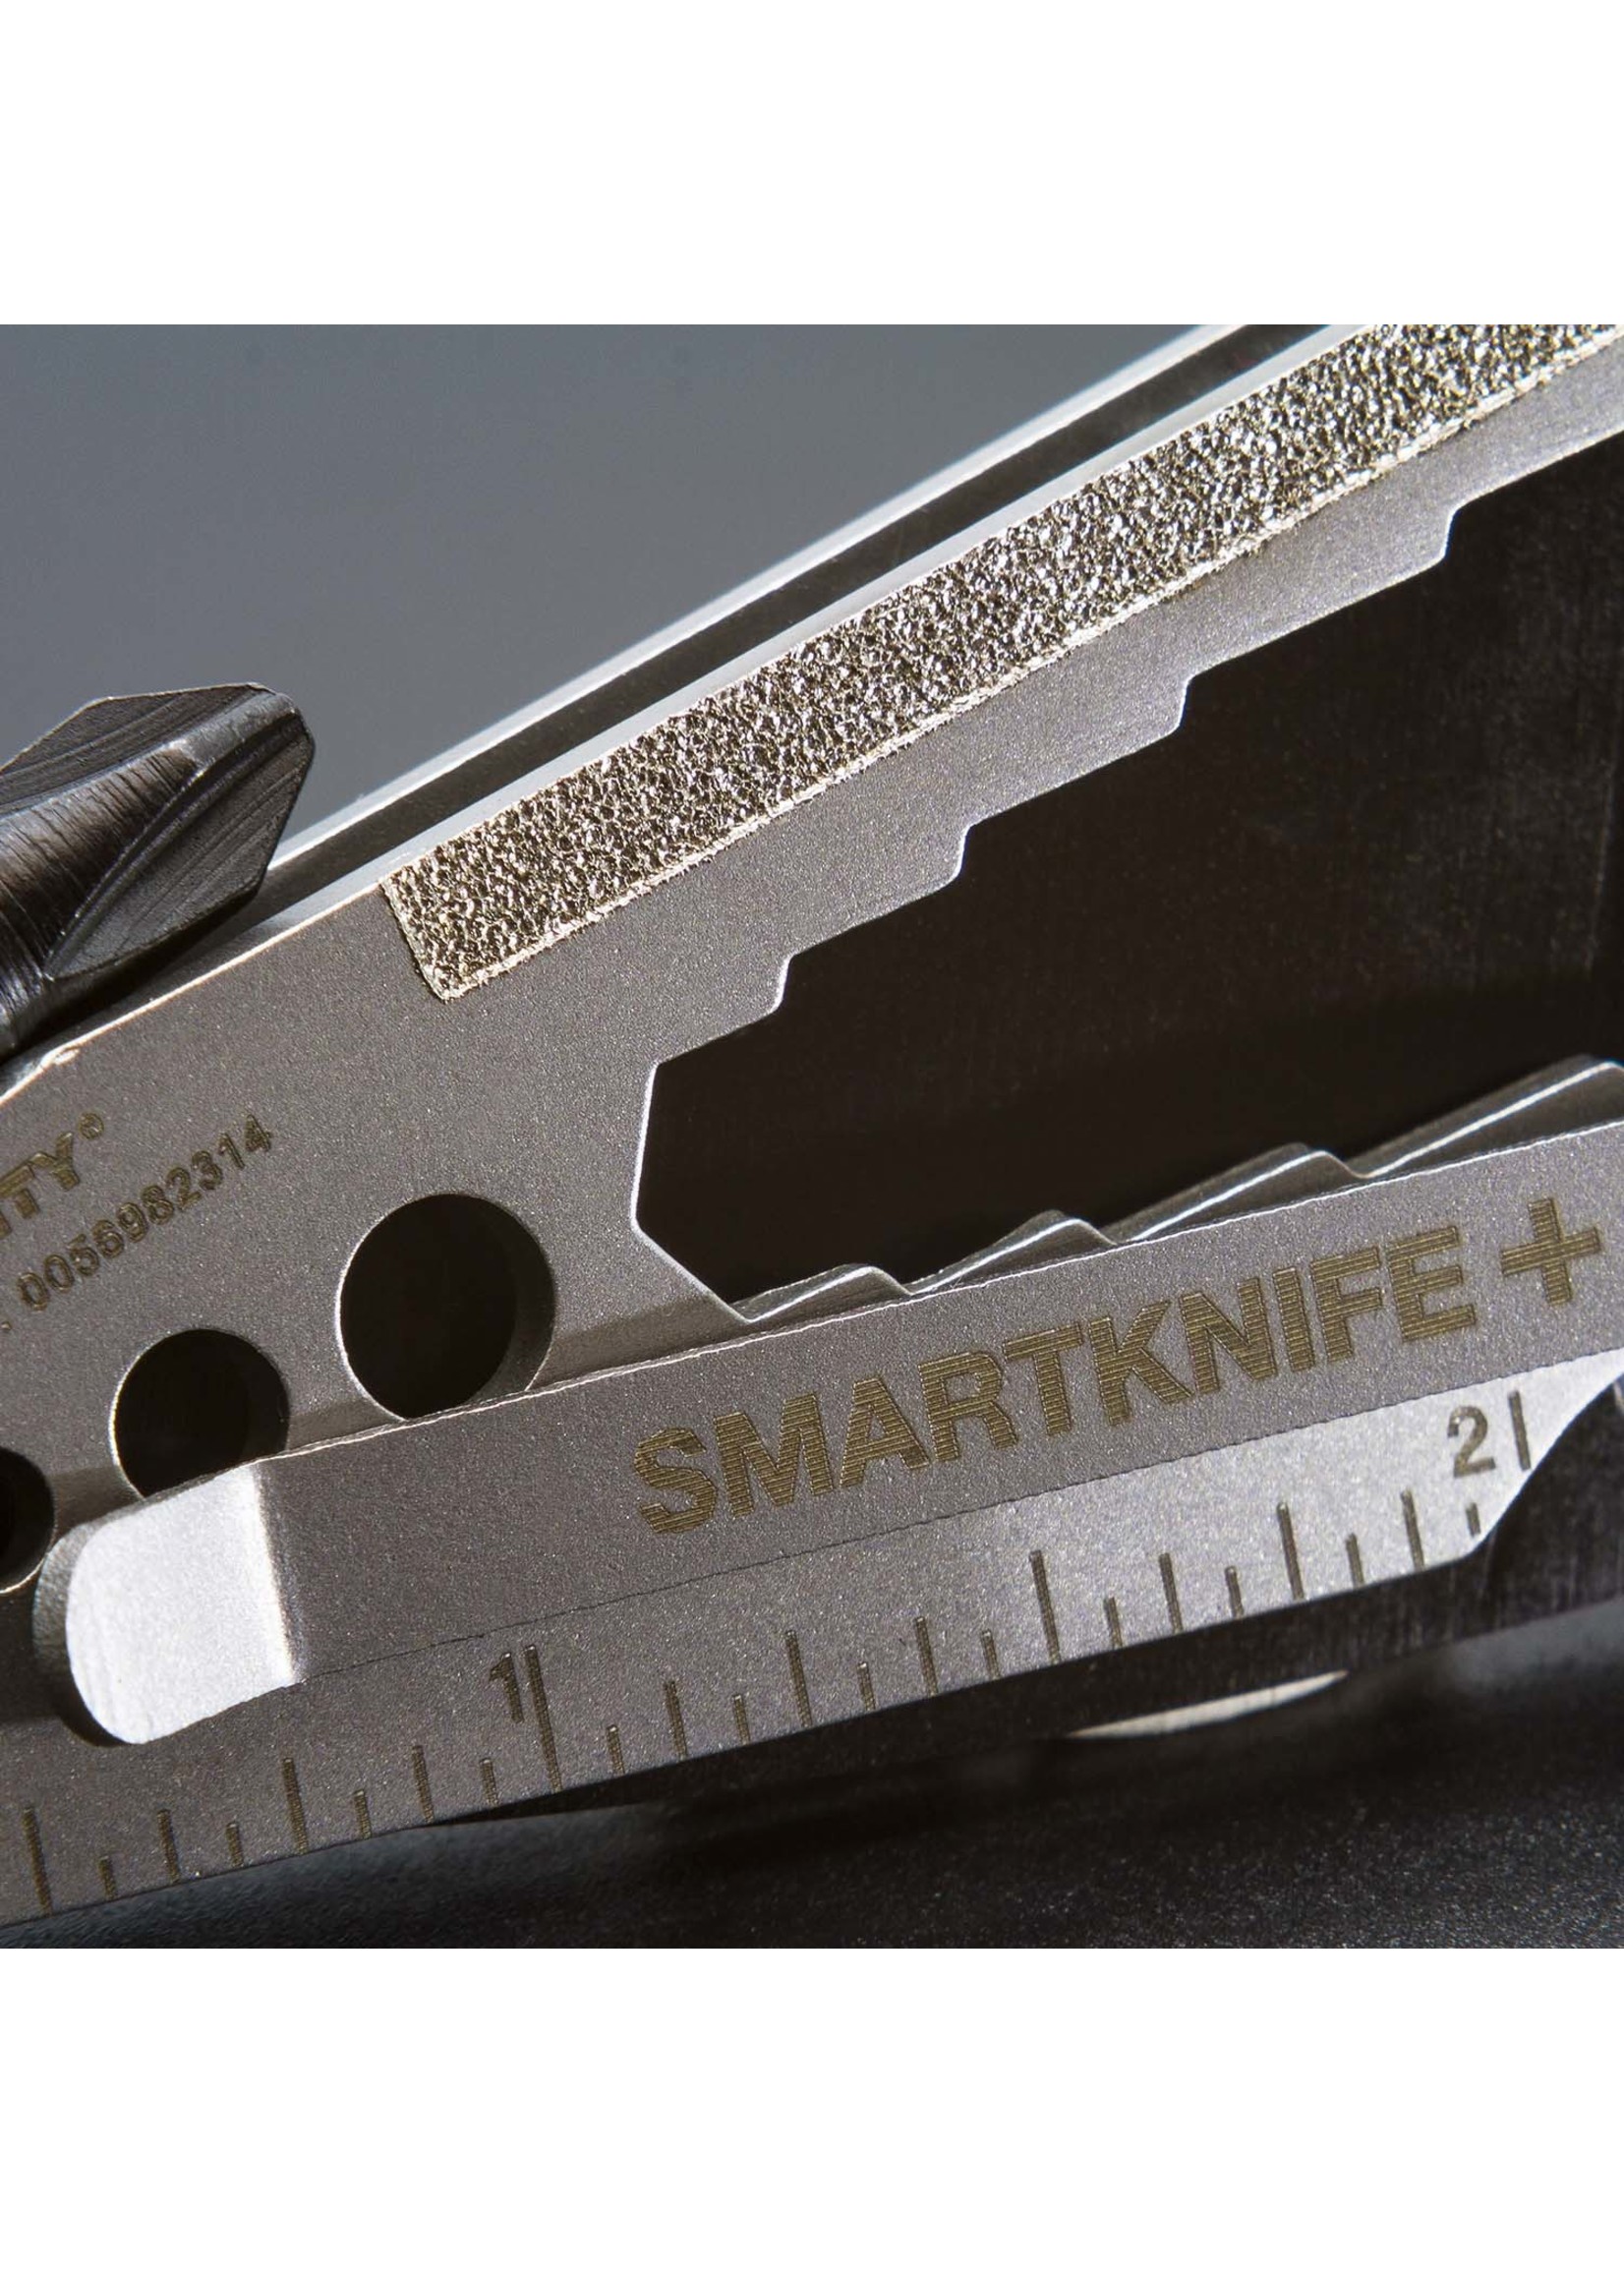 True Utility Smart Knife+